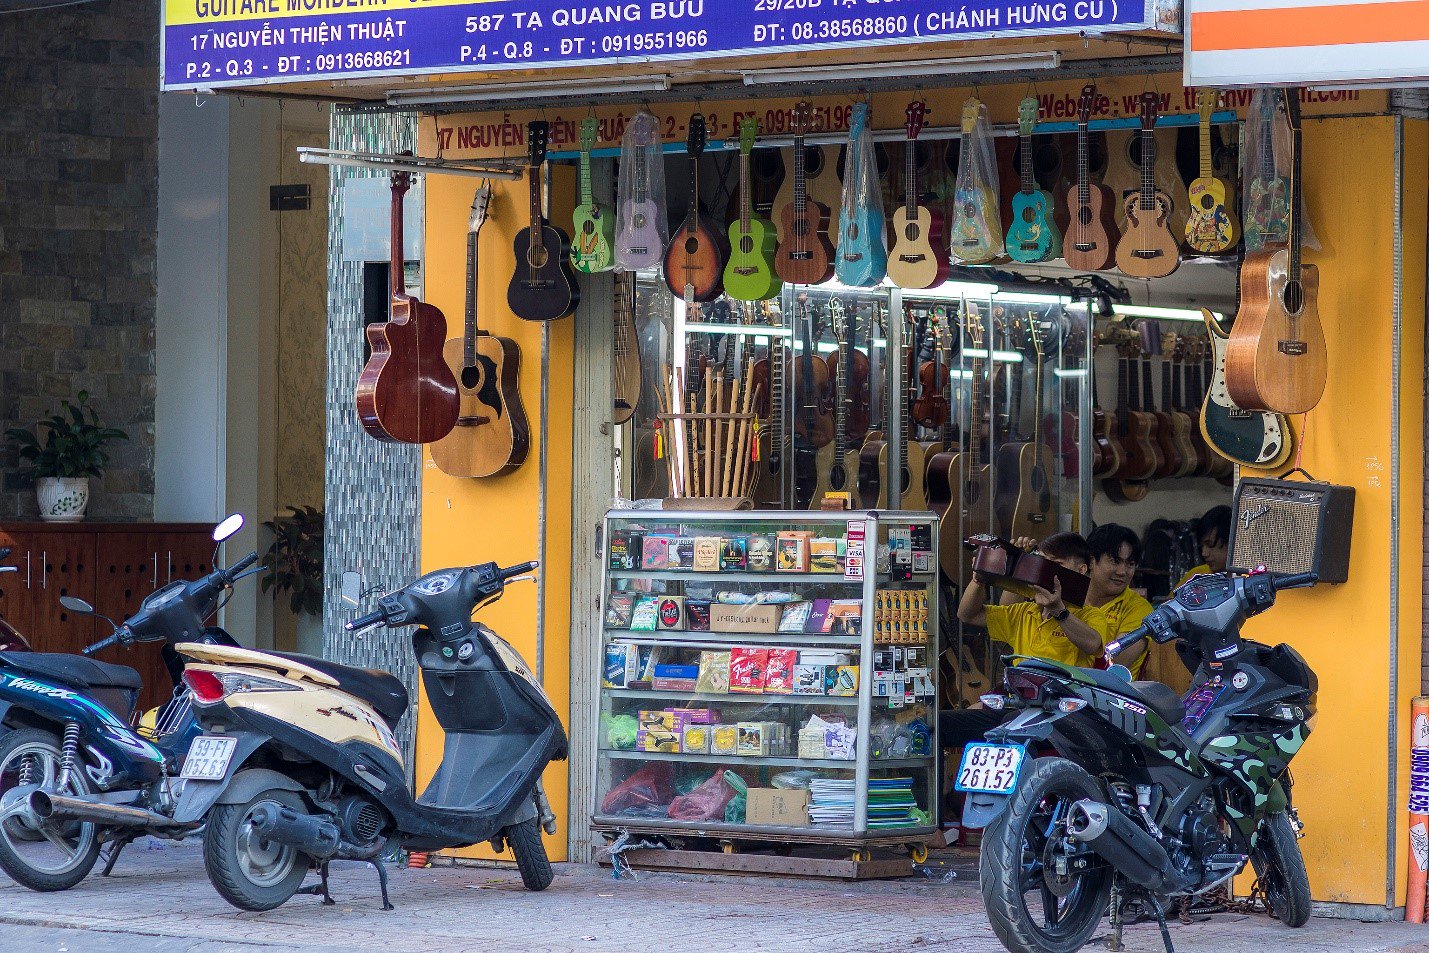 Guitar shop on Nguyen Thien Thuat st.